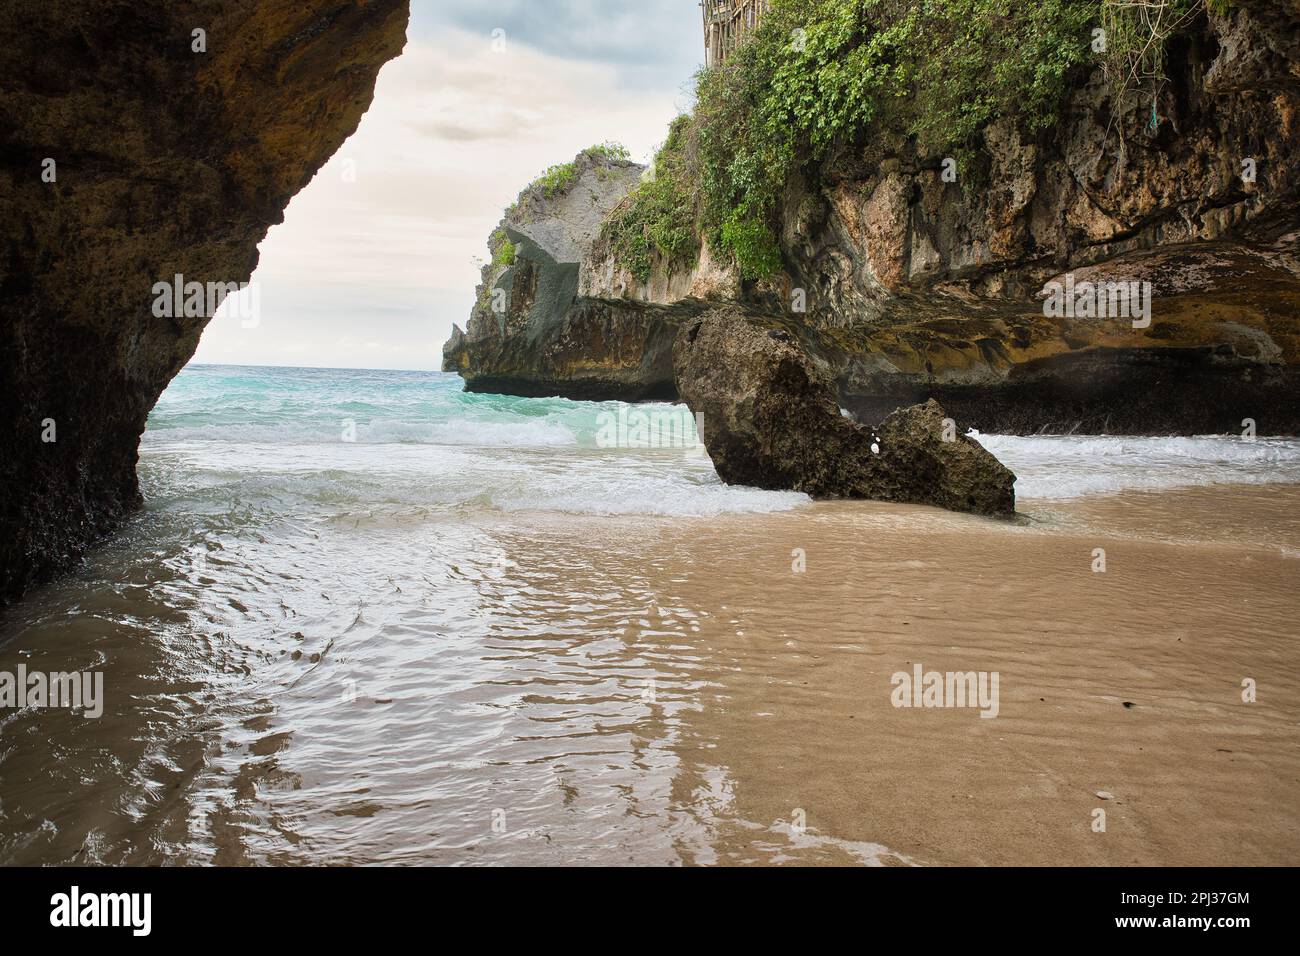 Der sulubanische Strand in Bali, Indonesien, umgeben von einer Bucht mit majestätischen Felsen. Stockfoto